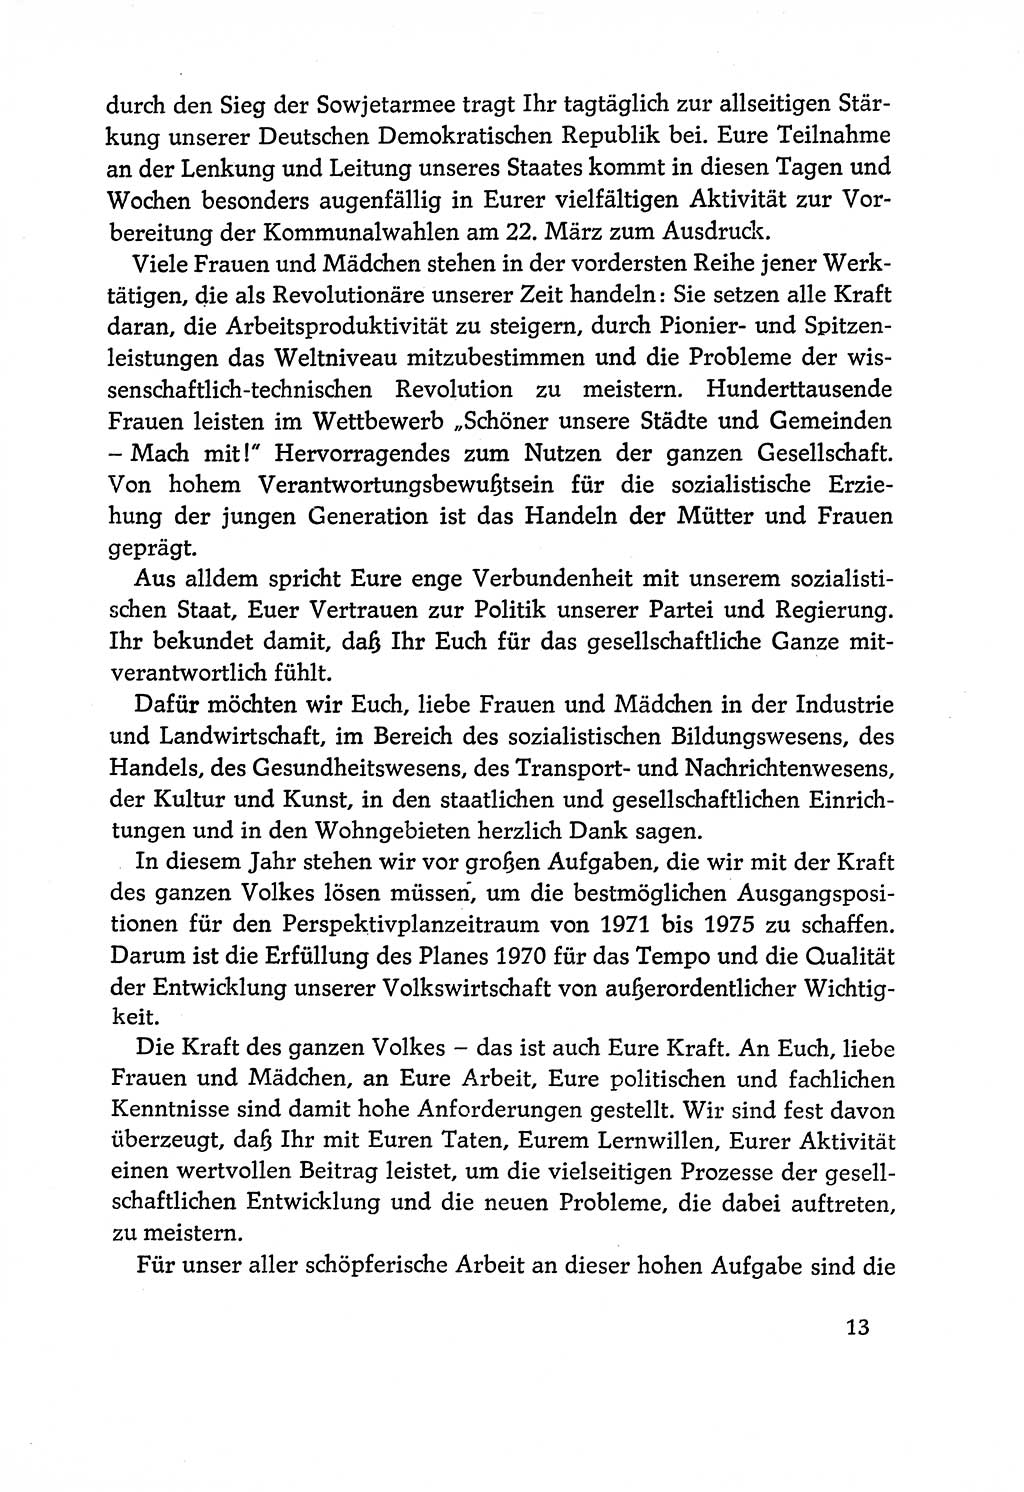 Dokumente der Sozialistischen Einheitspartei Deutschlands (SED) [Deutsche Demokratische Republik (DDR)] 1970-1971, Seite 13 (Dok. SED DDR 1970-1971, S. 13)